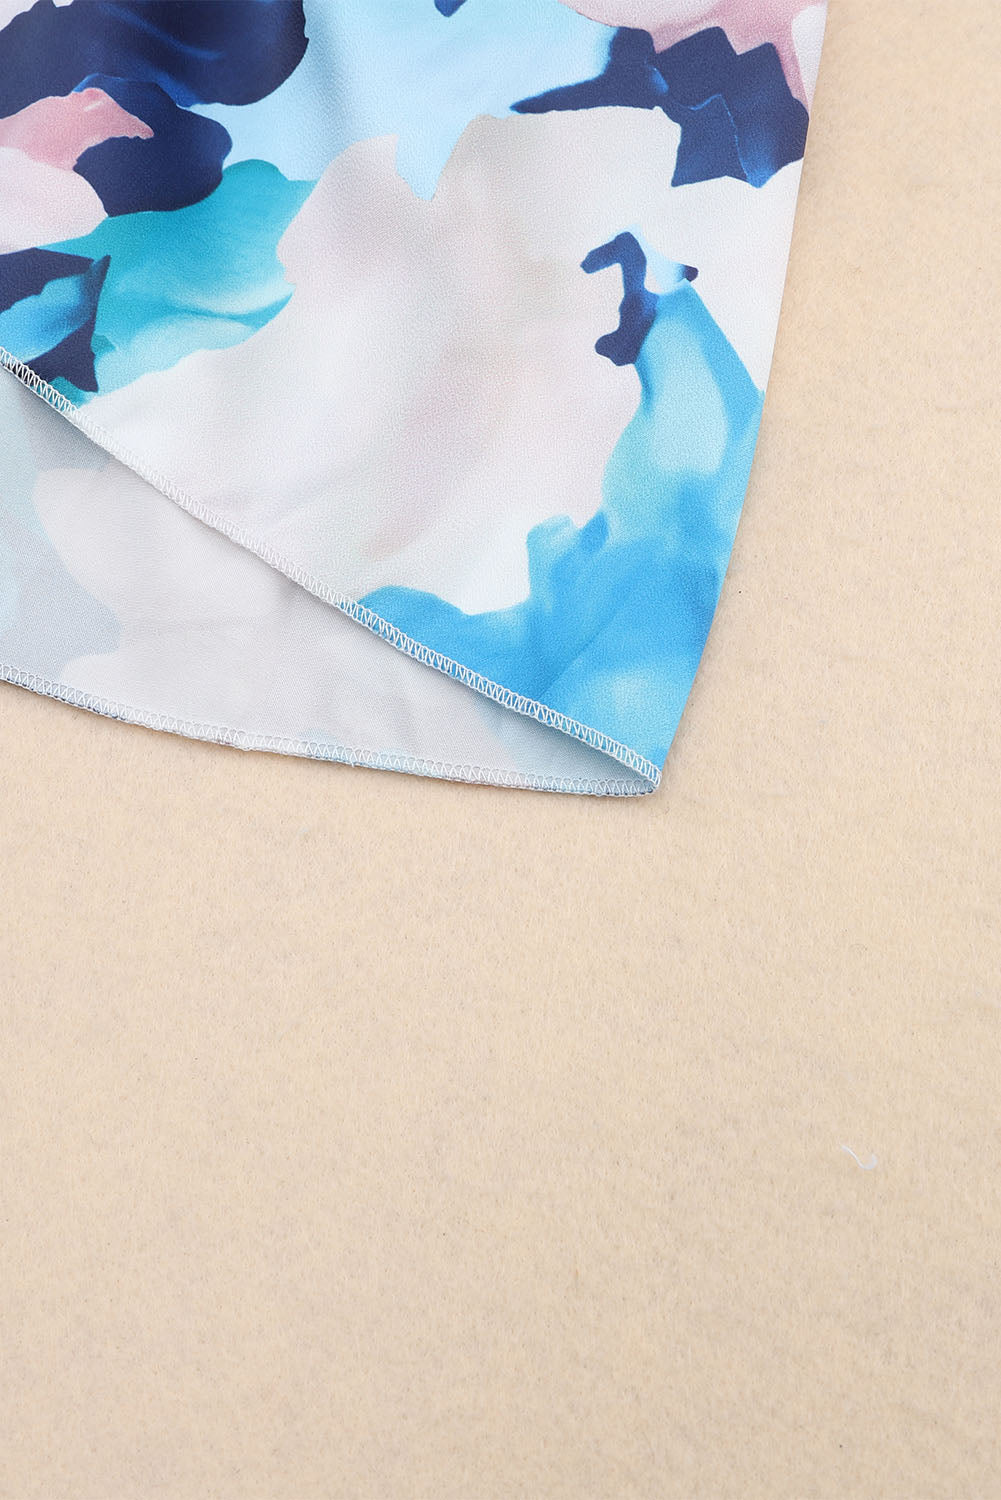 Robe bleue à volants nouée à manches longues et motif floral abstrait